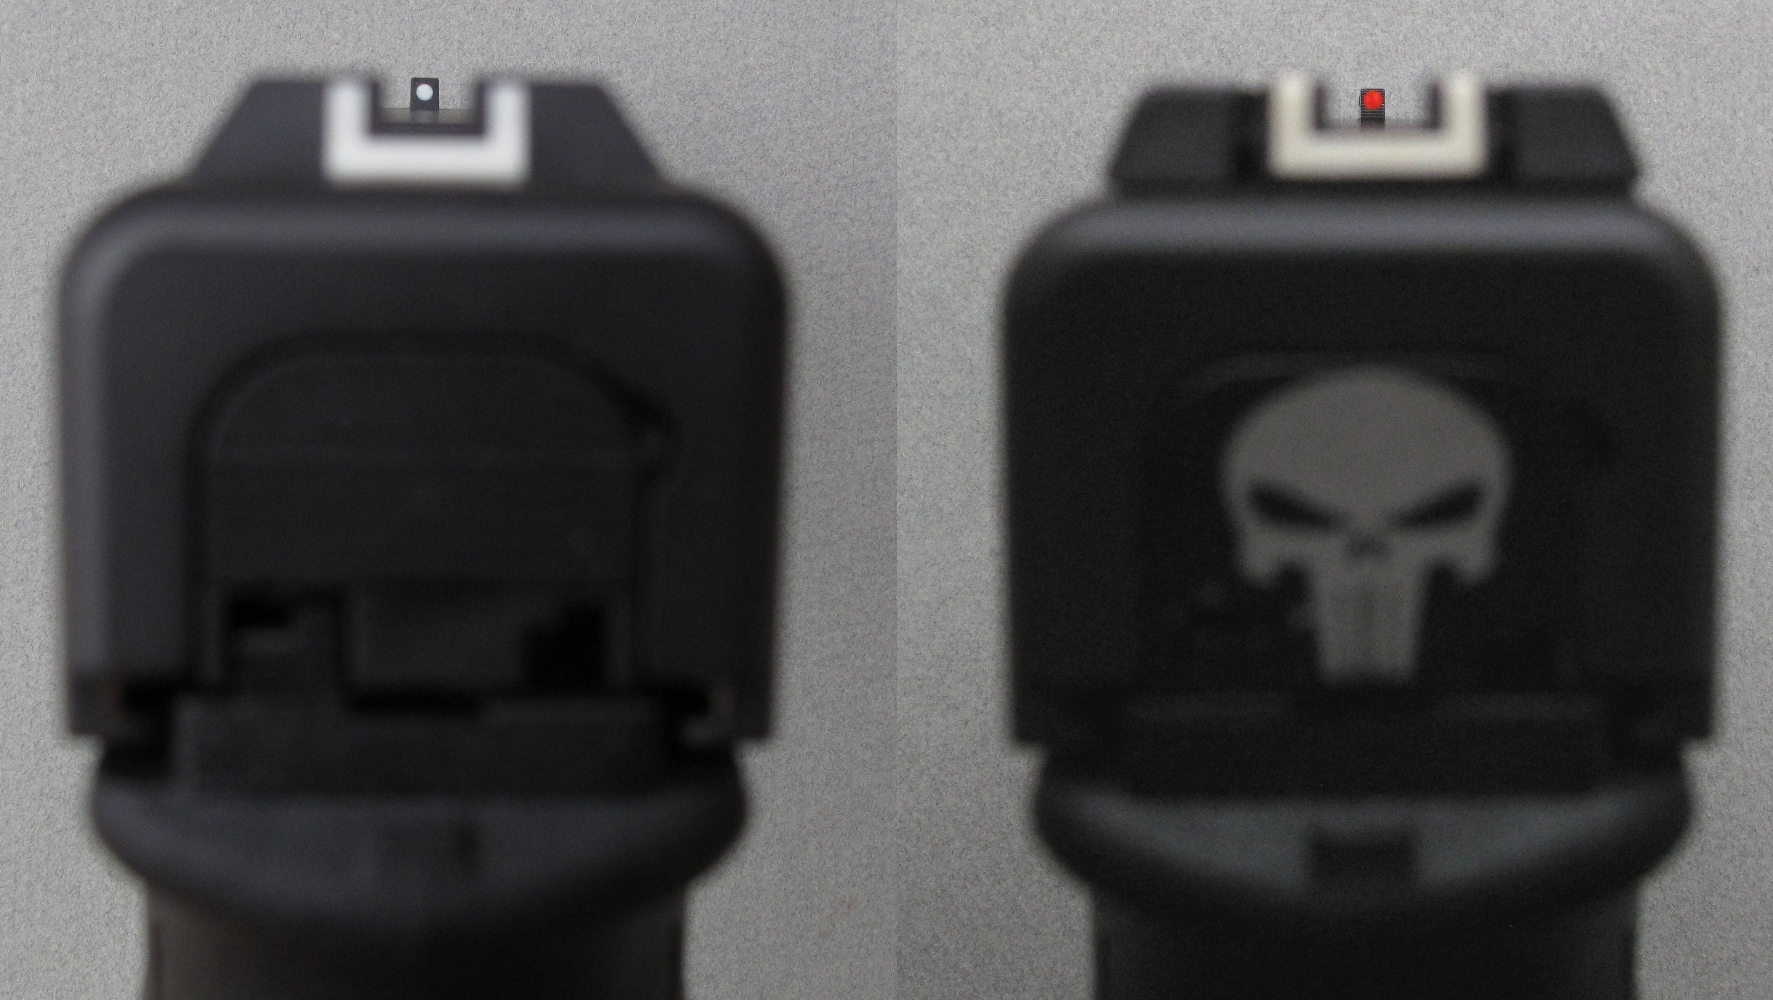 Comparaison entre la prise de visée standard (à gauche) et la prise de visée avec hausse réglable et fibre optique. Tenez compte du fait, d’une part, que l’objectif de l’appareil photo fait paraître le guidon plus petit que ne le voit l’œil du tireur et que, d’autre part, la luminosité de la fibre optique n’apparaît pas sur cette photo prise en intérieur.